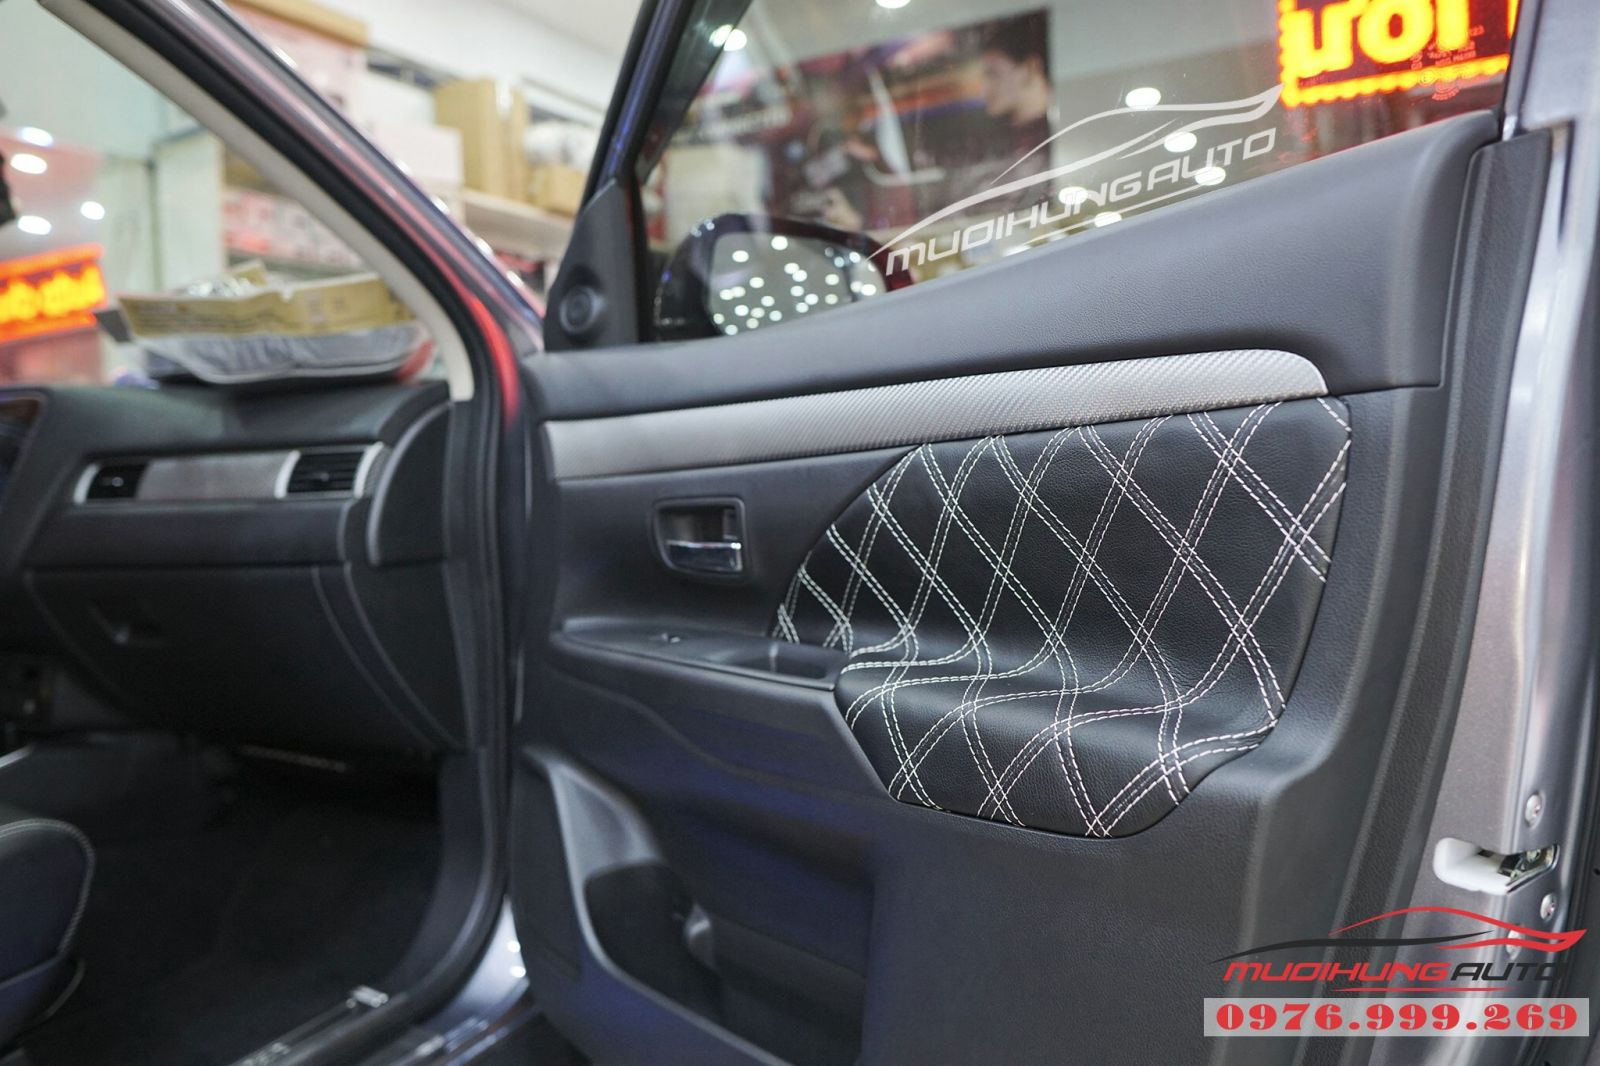 Mitsubishi Outlander bọc ghế cao cấp giá rẻ tại TPHCM 01